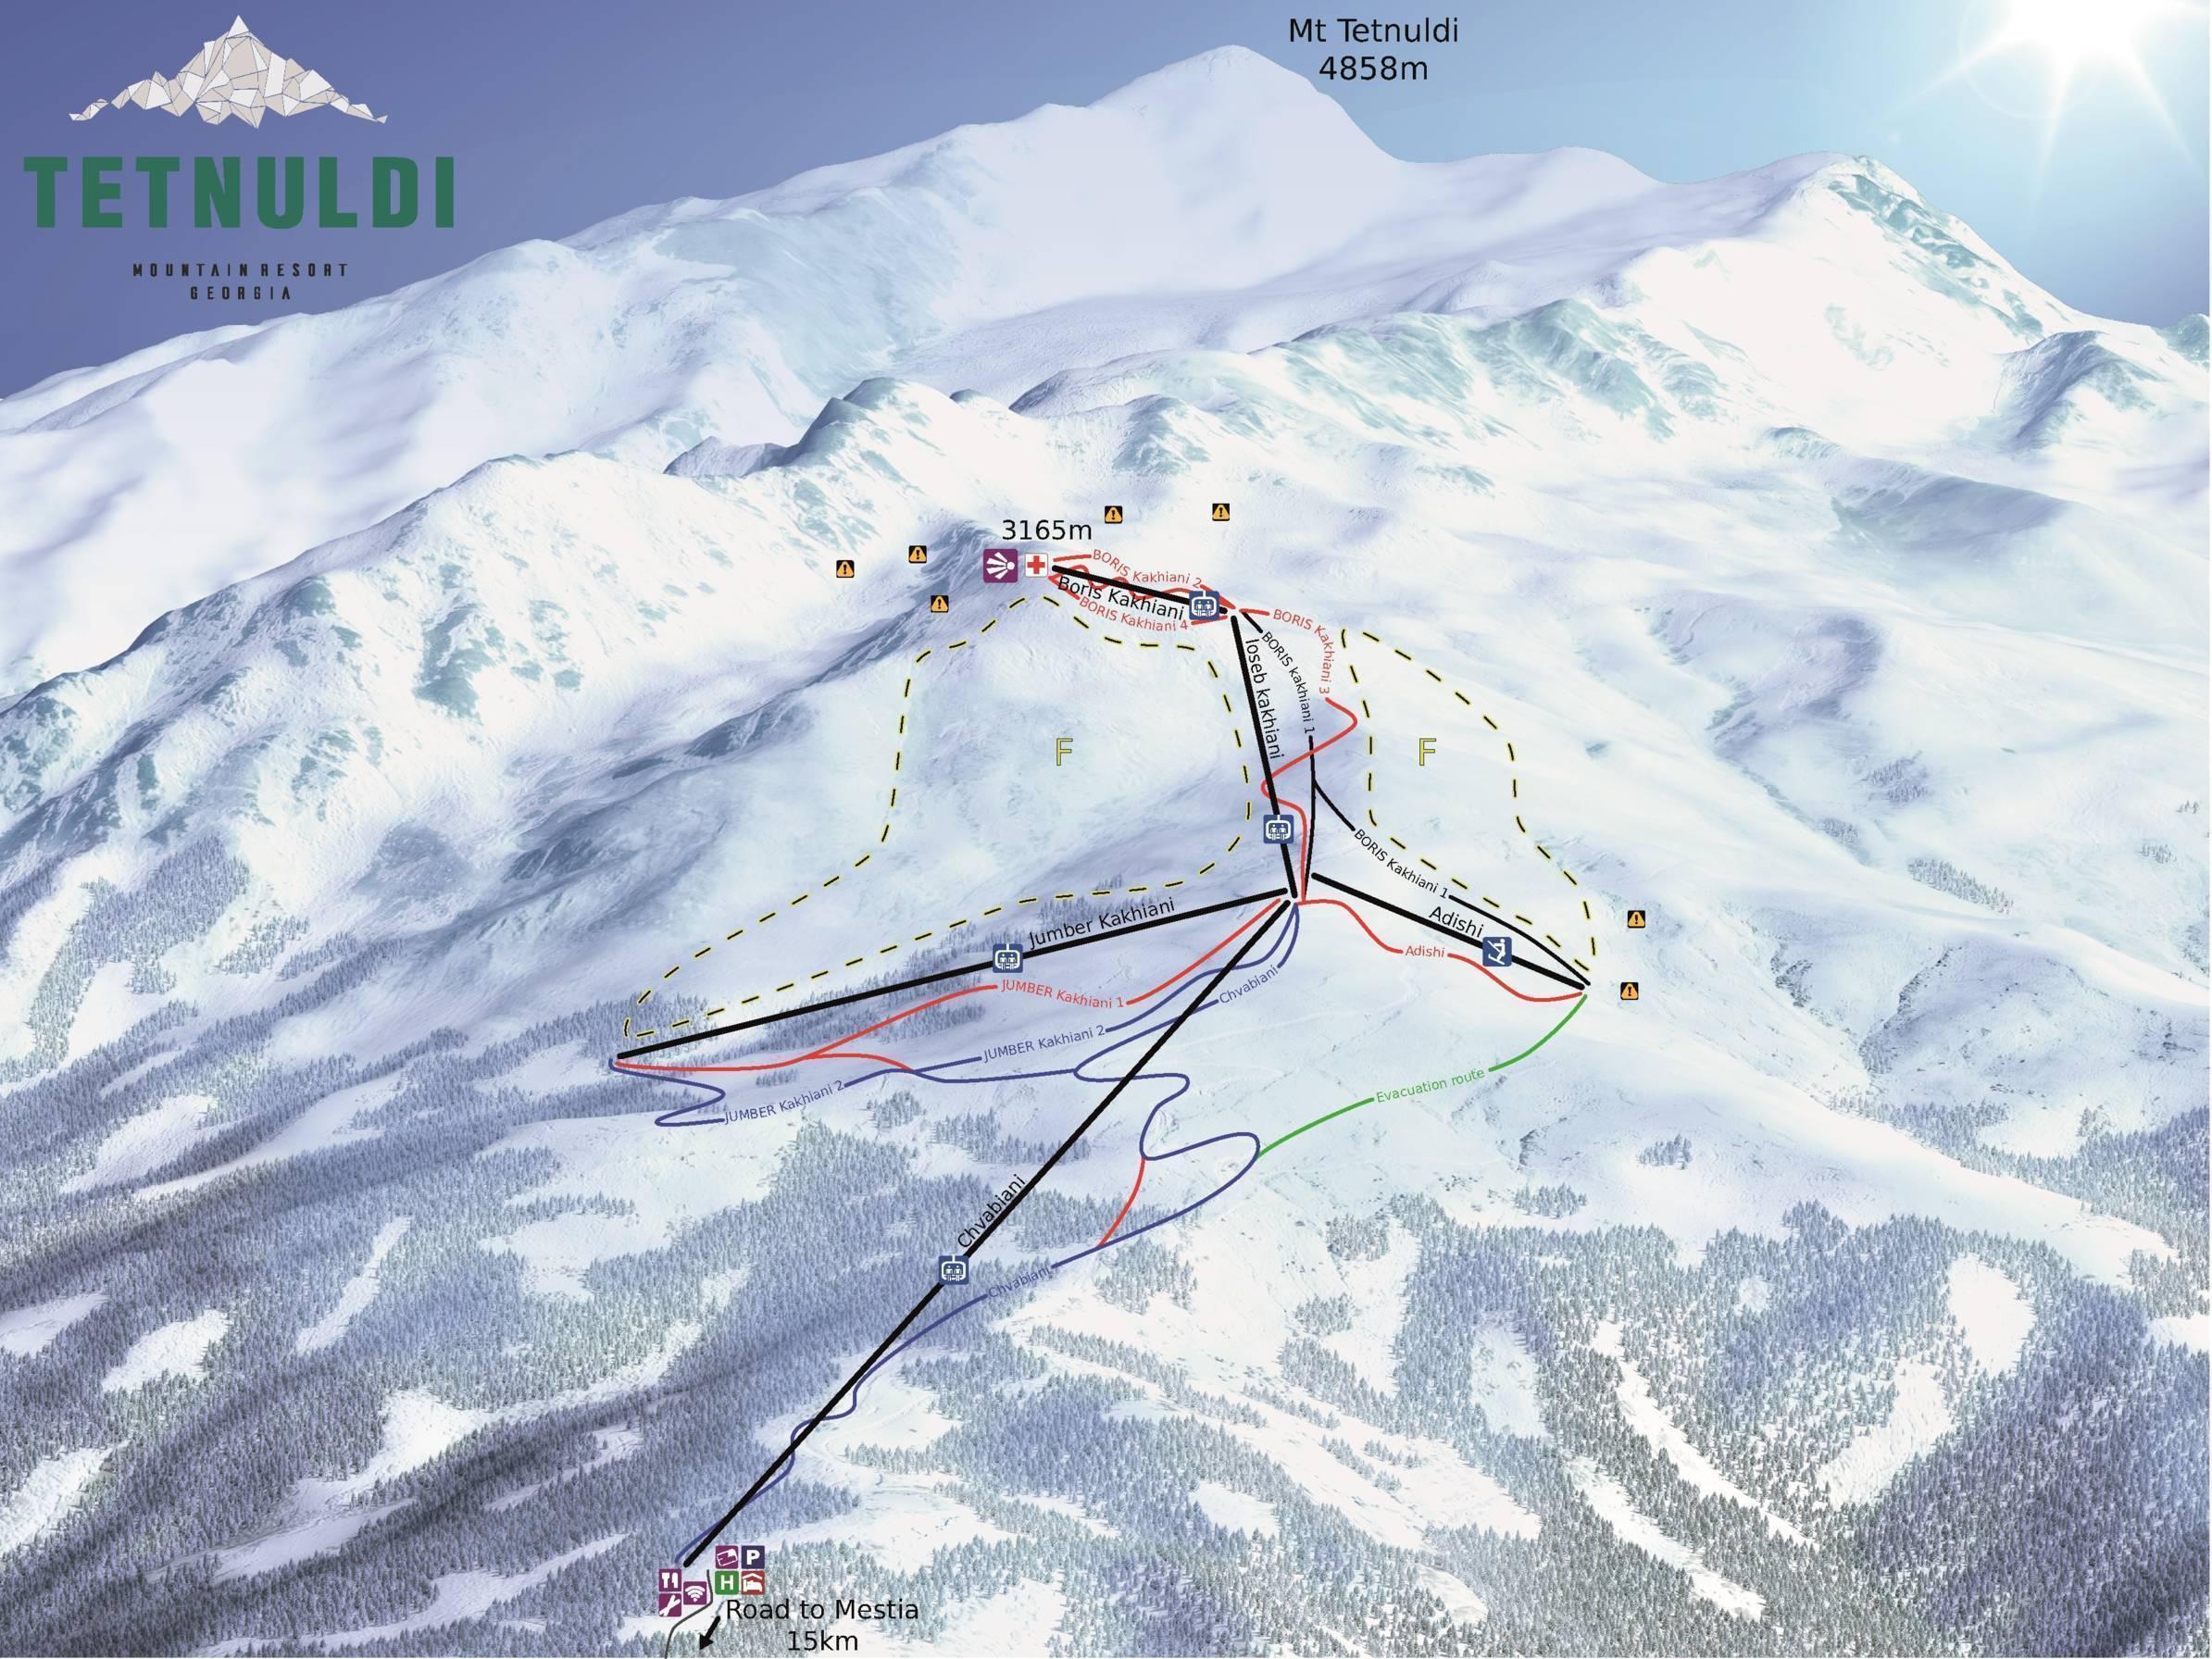 Ski resort in Svaneti